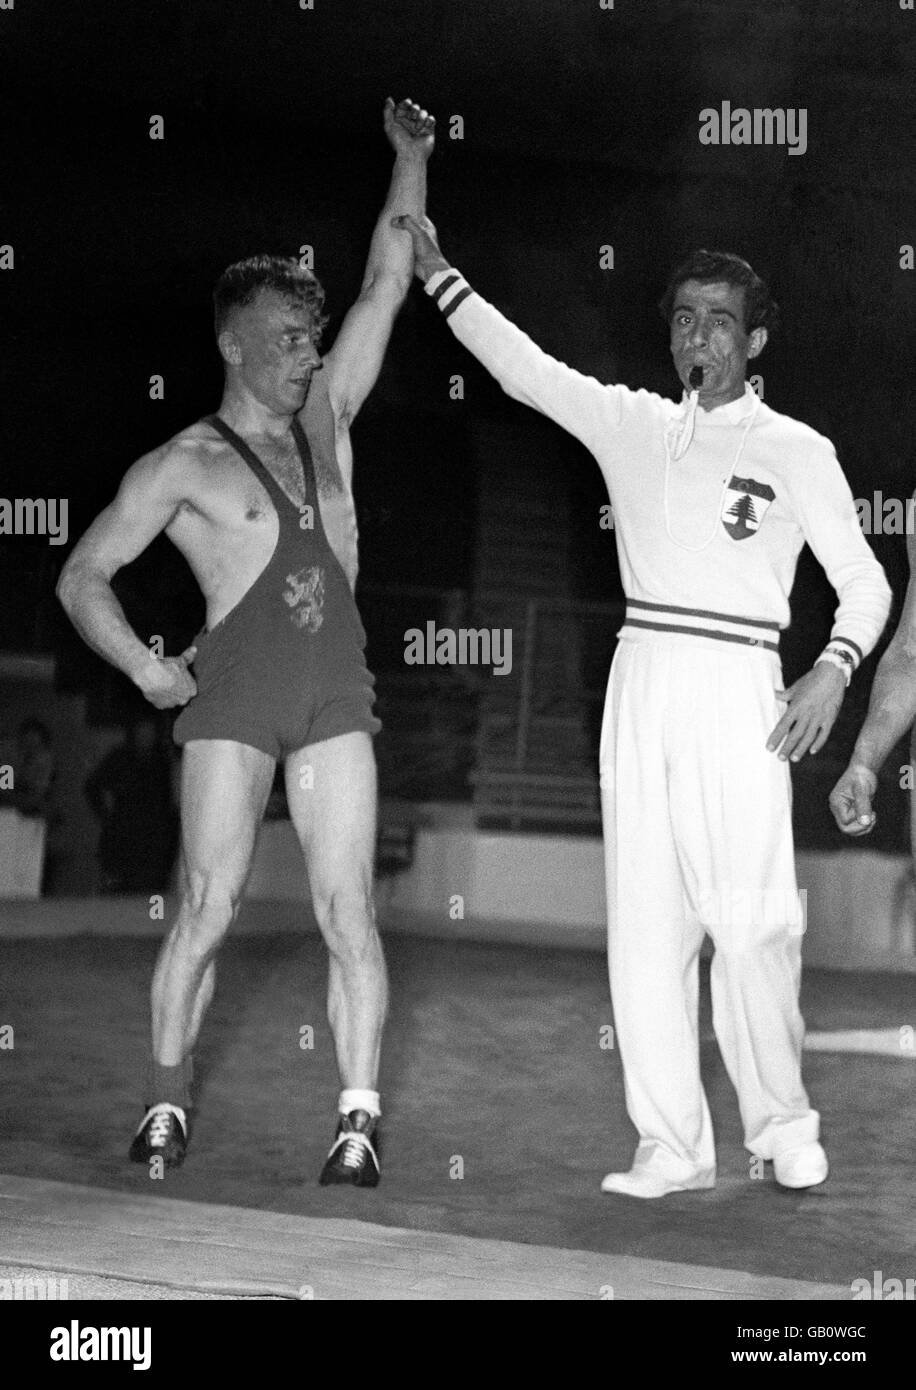 Juegos Olímpicos de Londres 1948 - Wrestling - Earls Court. Foto de uno de los ganadores tras un partido de lucha al estilo greco-romano. Foto de stock